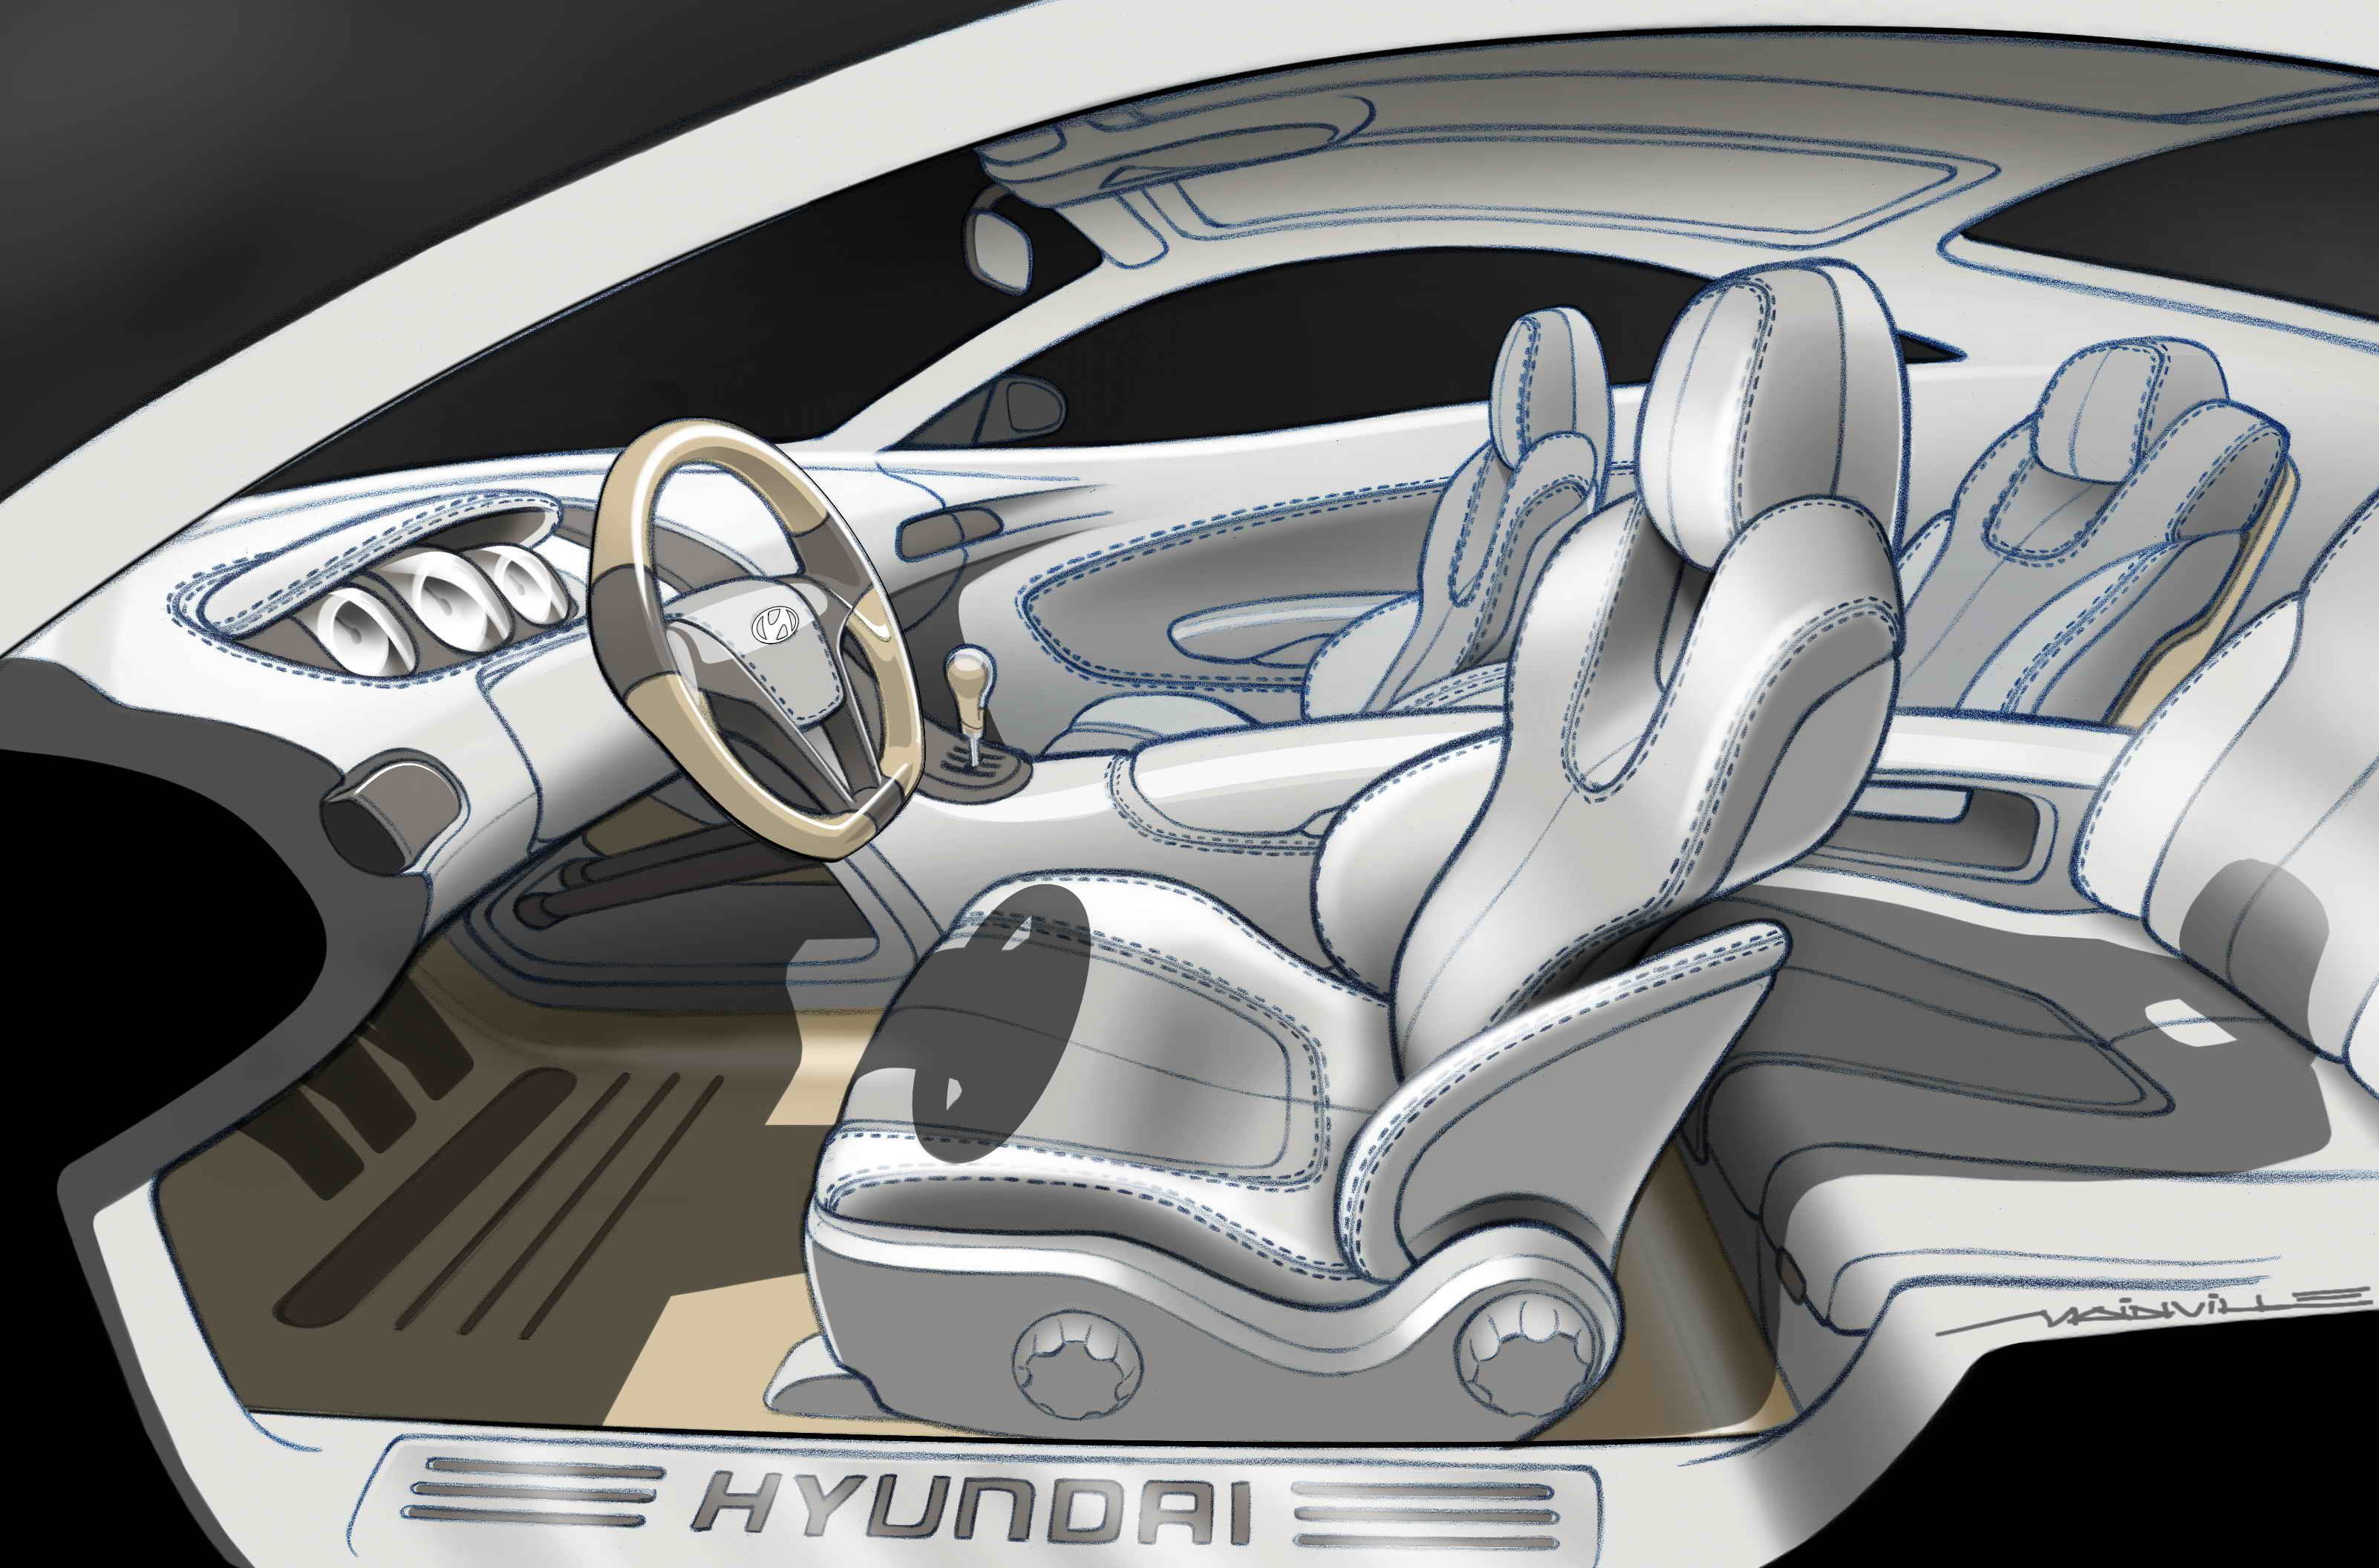 2004 Hyundai HCD8 concept